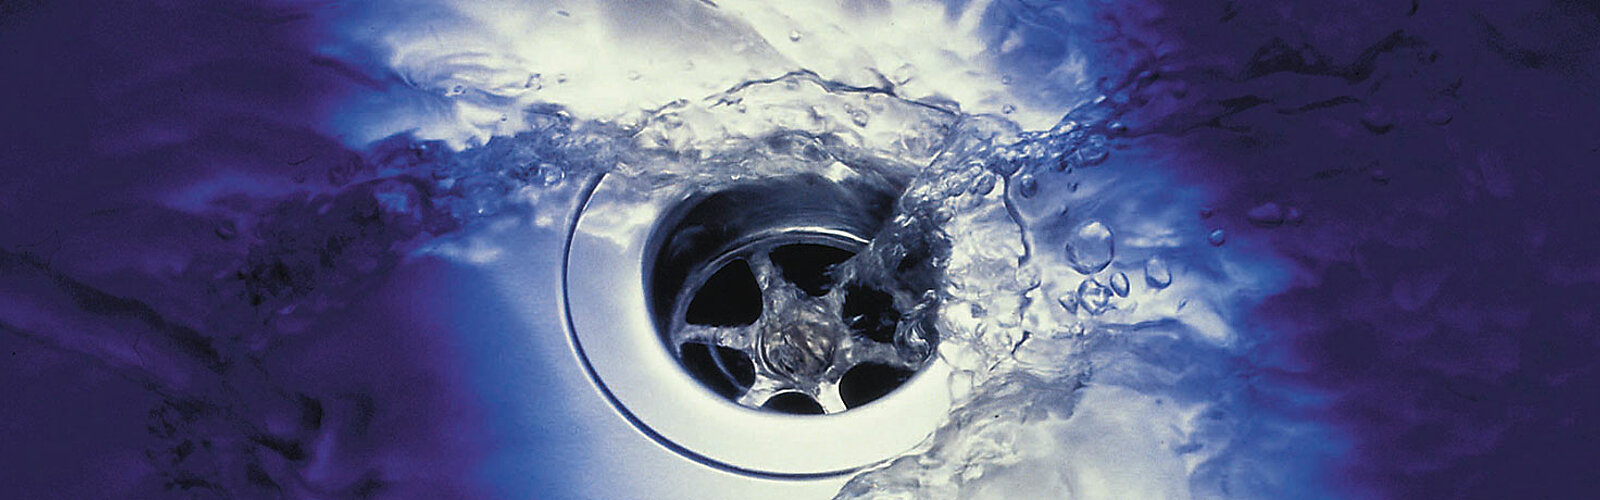 Das Bild zeigt den Abfluss einer Spüle, in den Wasser fließt.